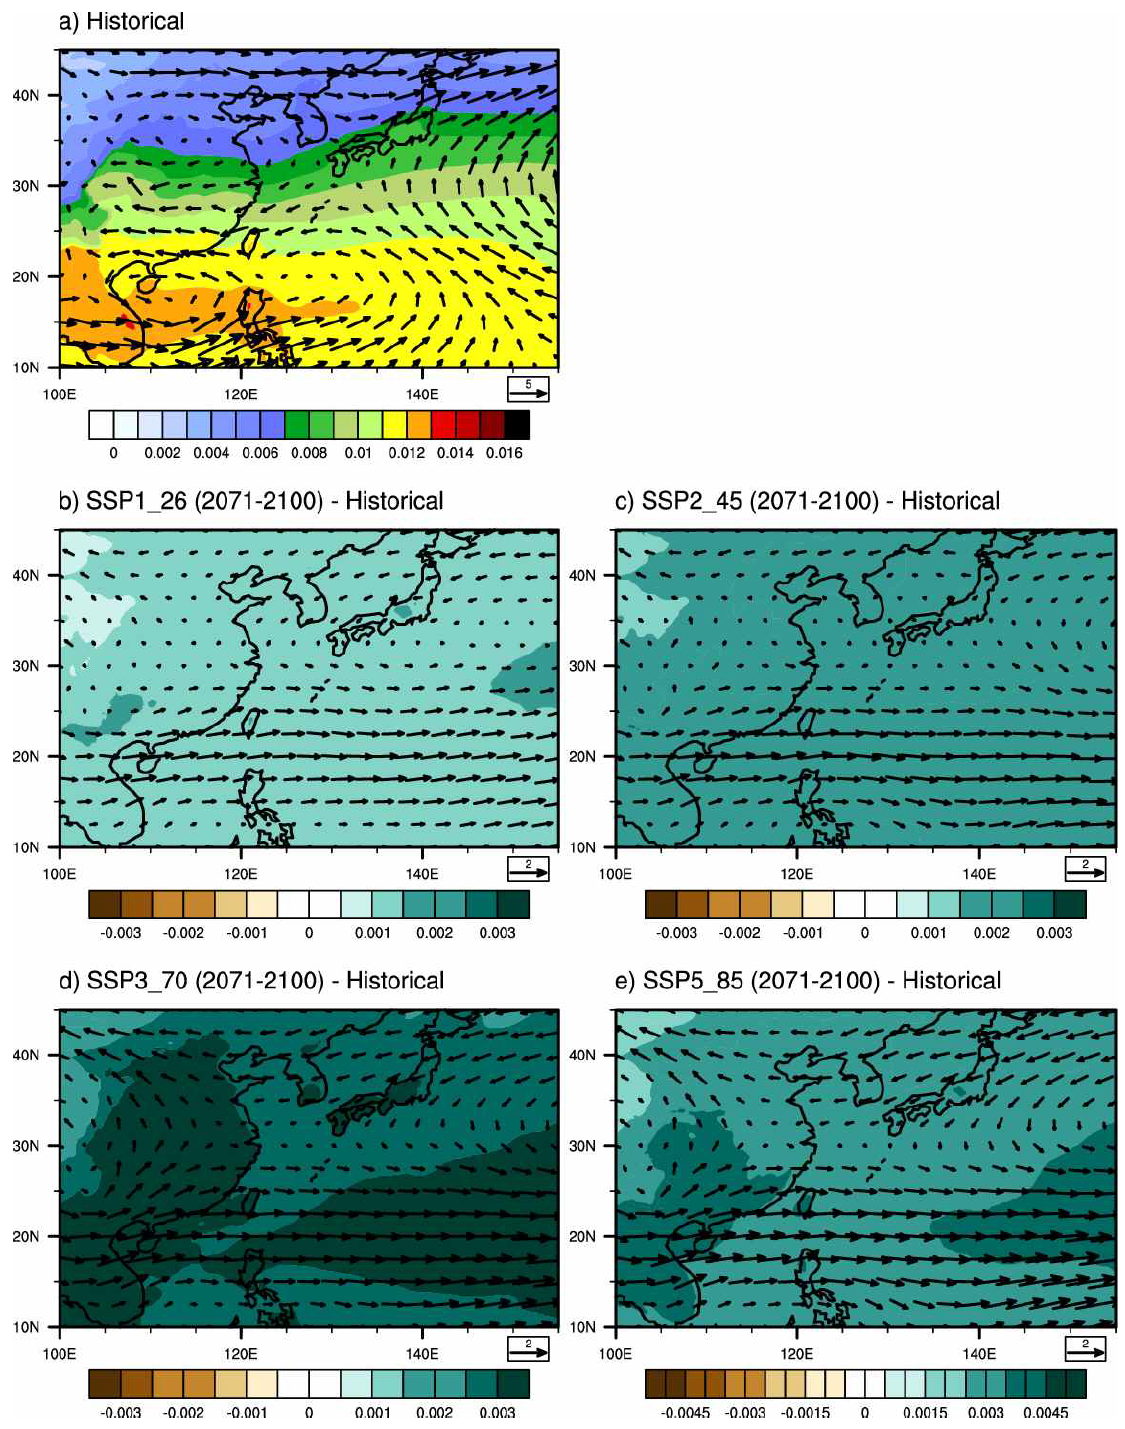 (수식)850 hPa specific humidity (kg kg- ) and wind (m s- ) from June to November for (a) climatological mean for historical run (1985-2014) and differences between (b) SSP1_26, (c) SSP2_45, (d) SSP3_70, and (e) SSP5_85 scenarios (2071-2100) and historical run